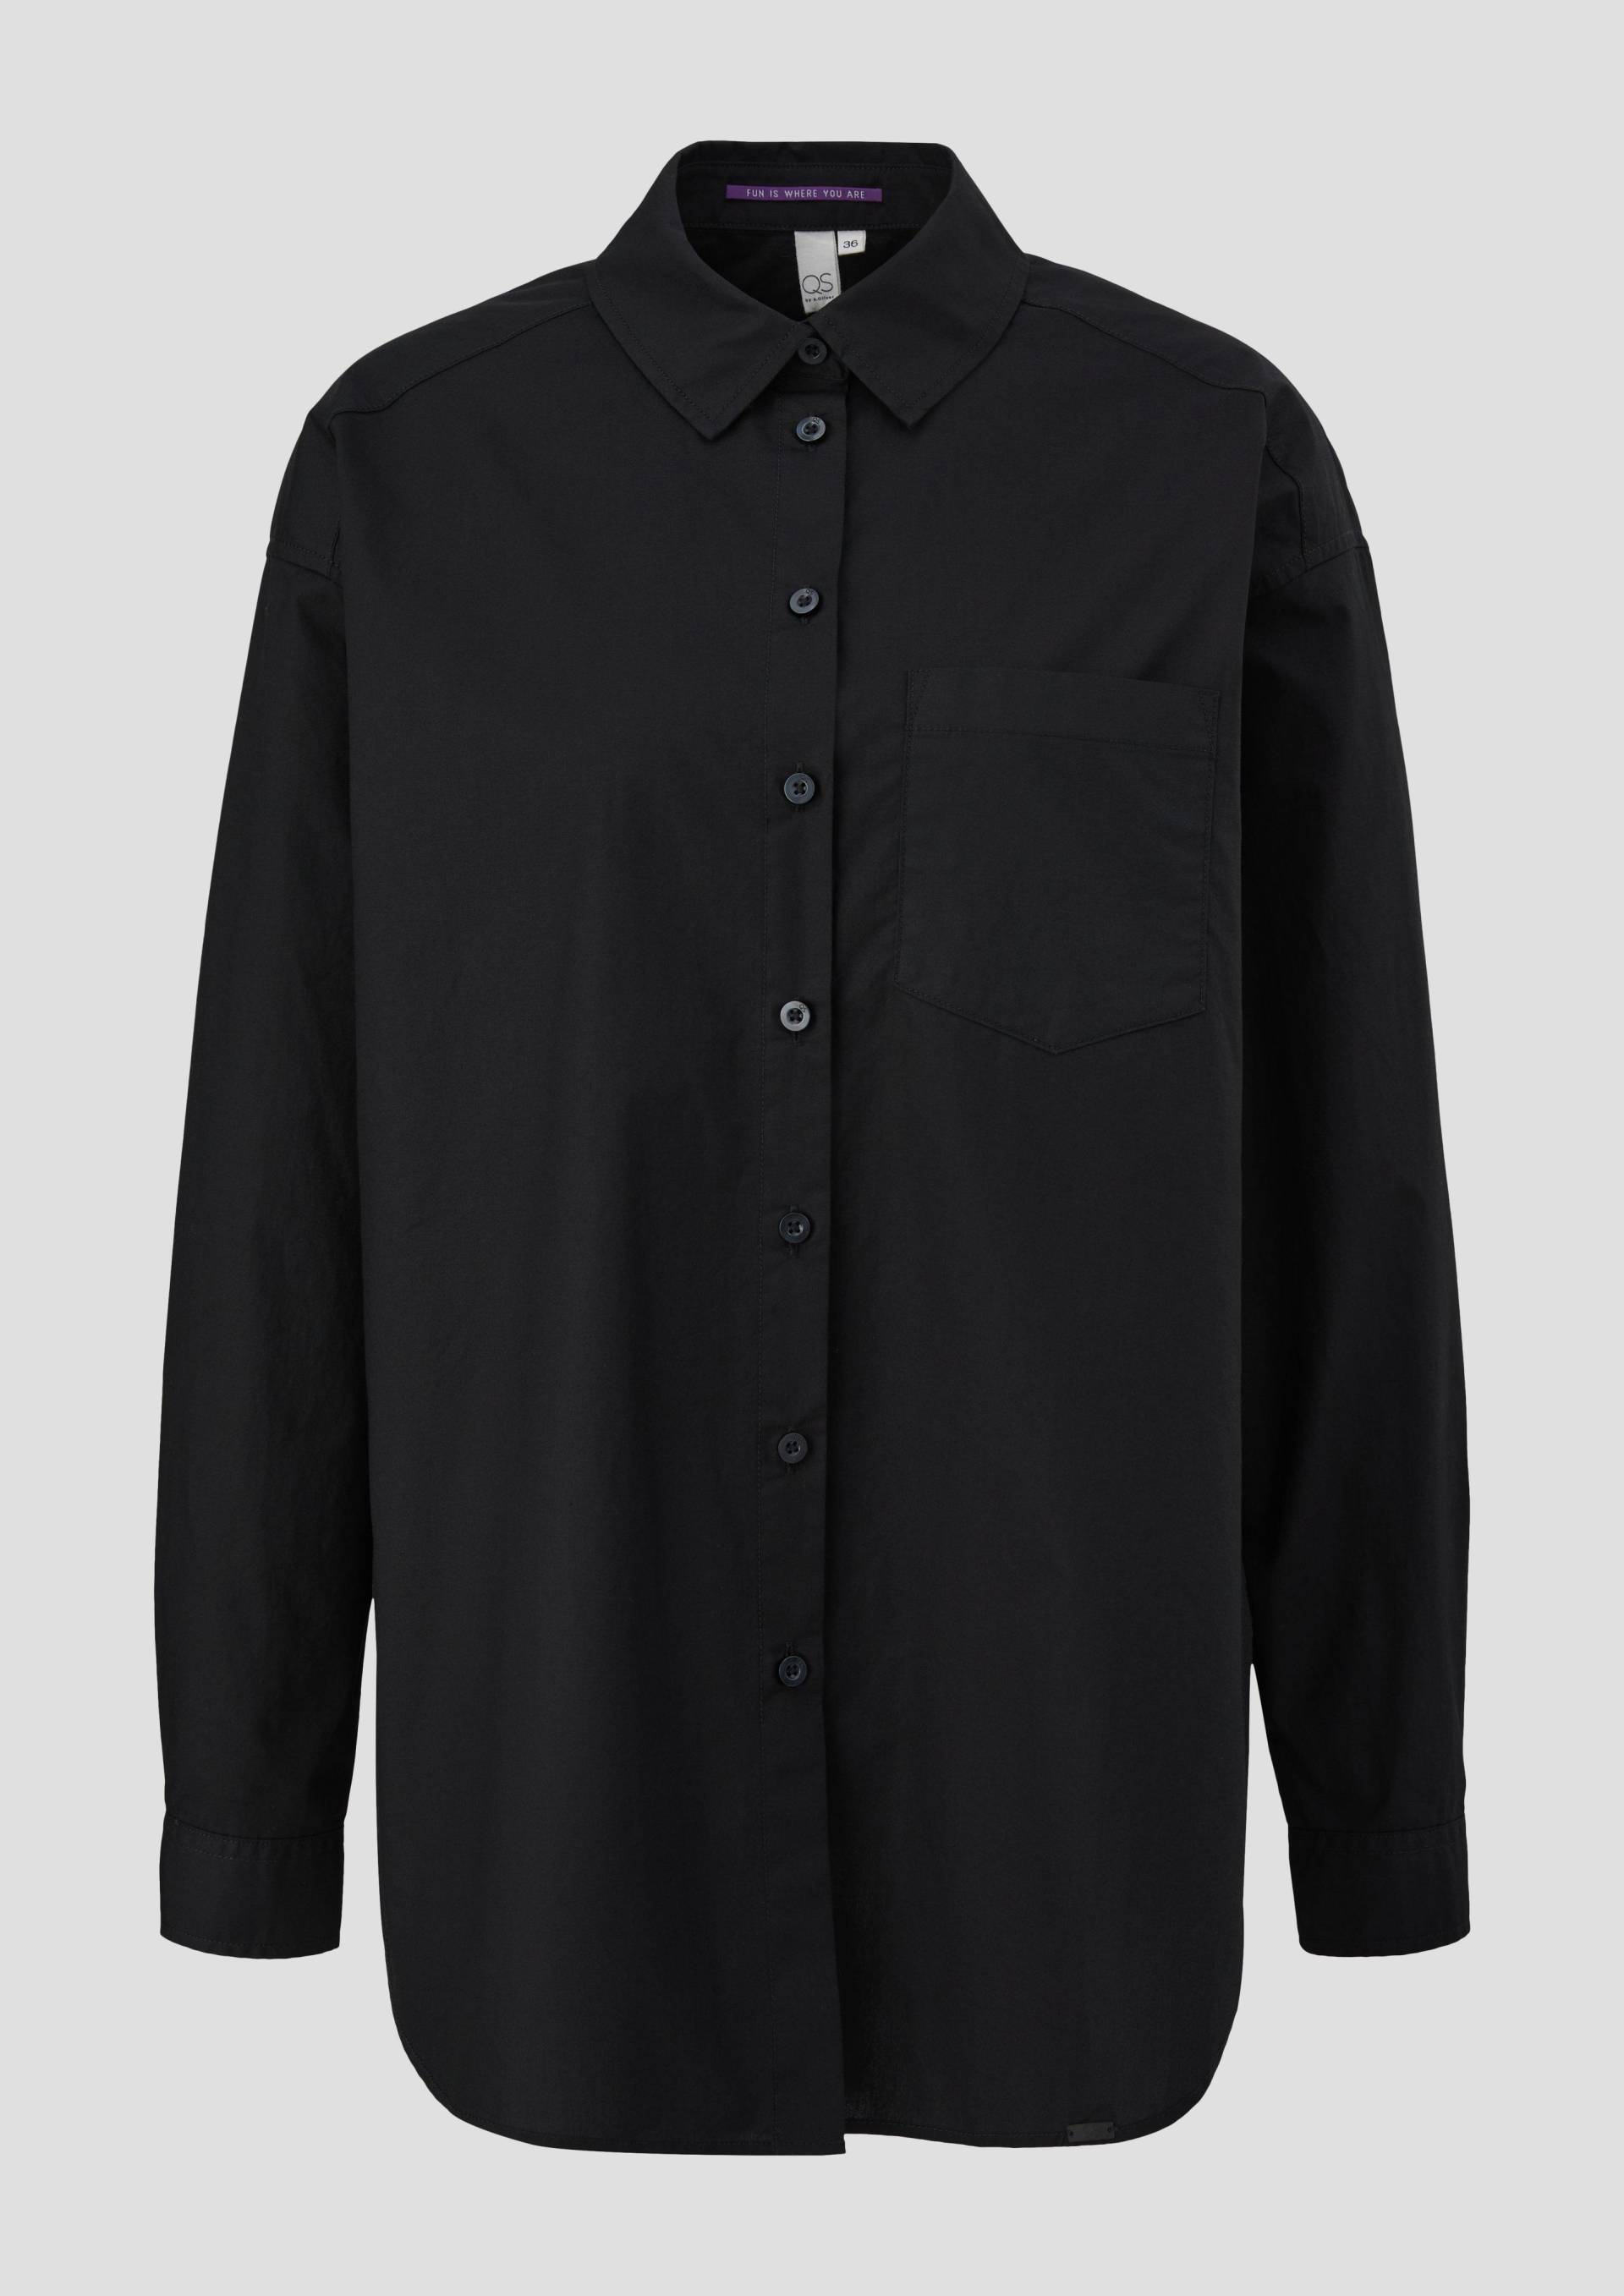 QS - Oversized Bluse aus Baumwolle, Damen, schwarz von QS